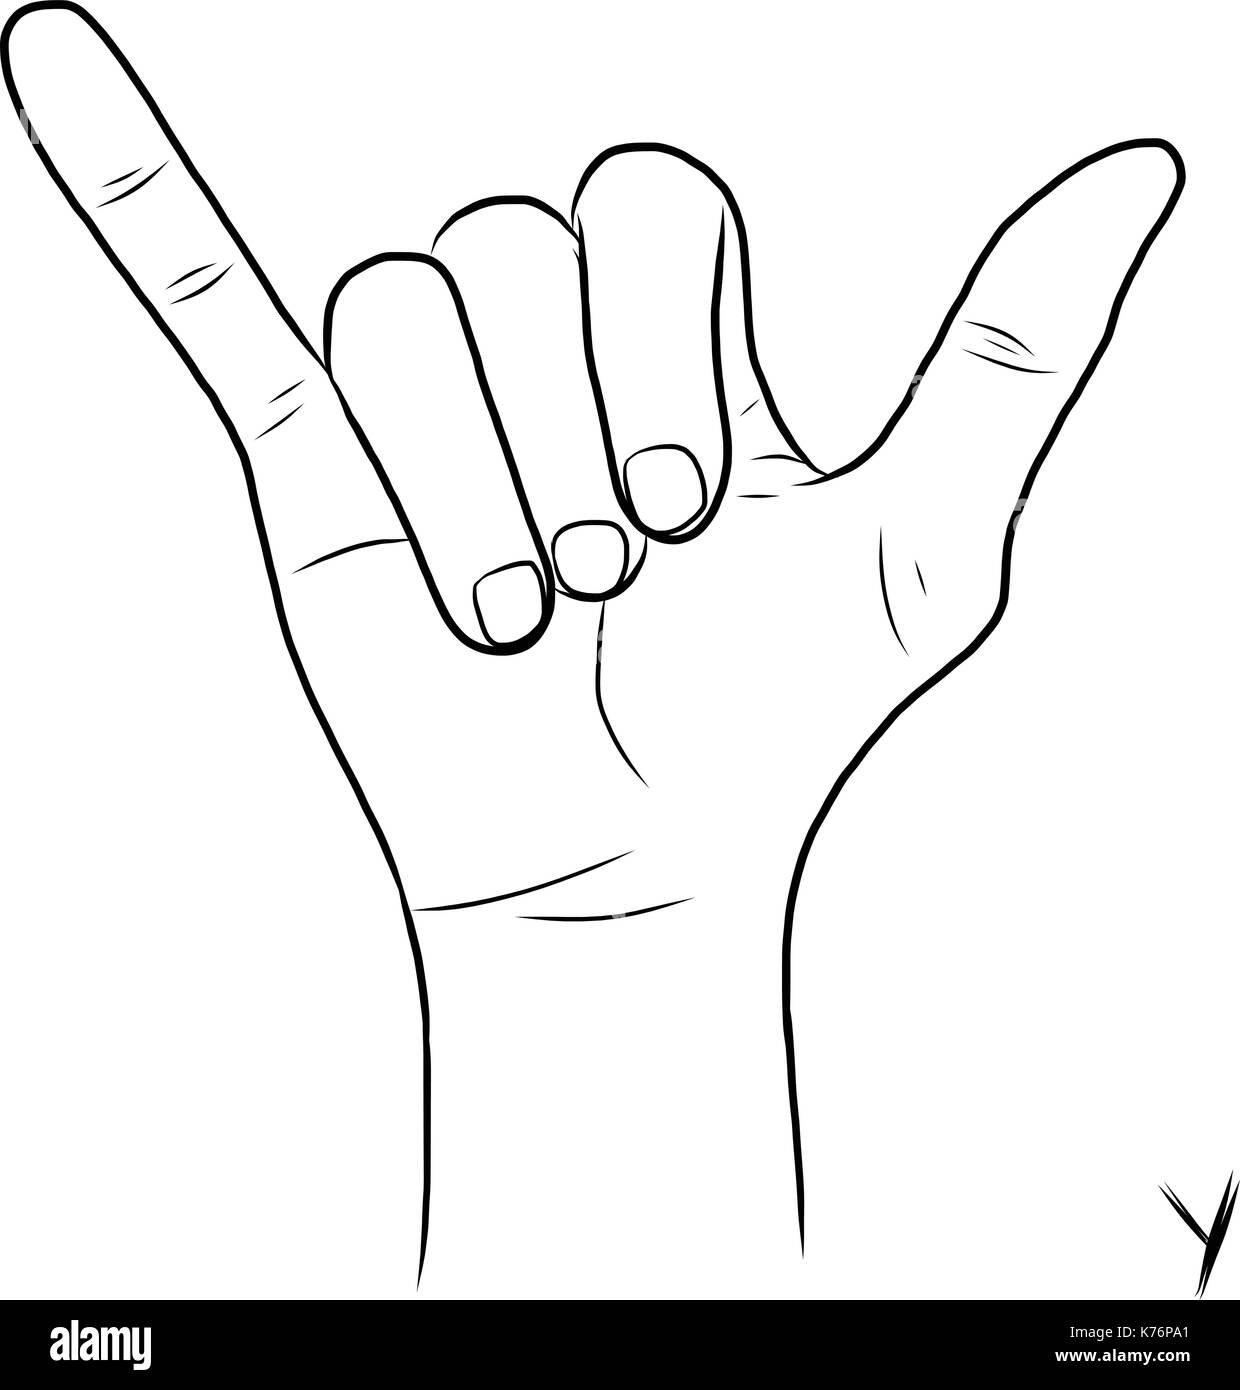 Il linguaggio dei segni e l'alfabeto,la lettera y Illustrazione Vettoriale